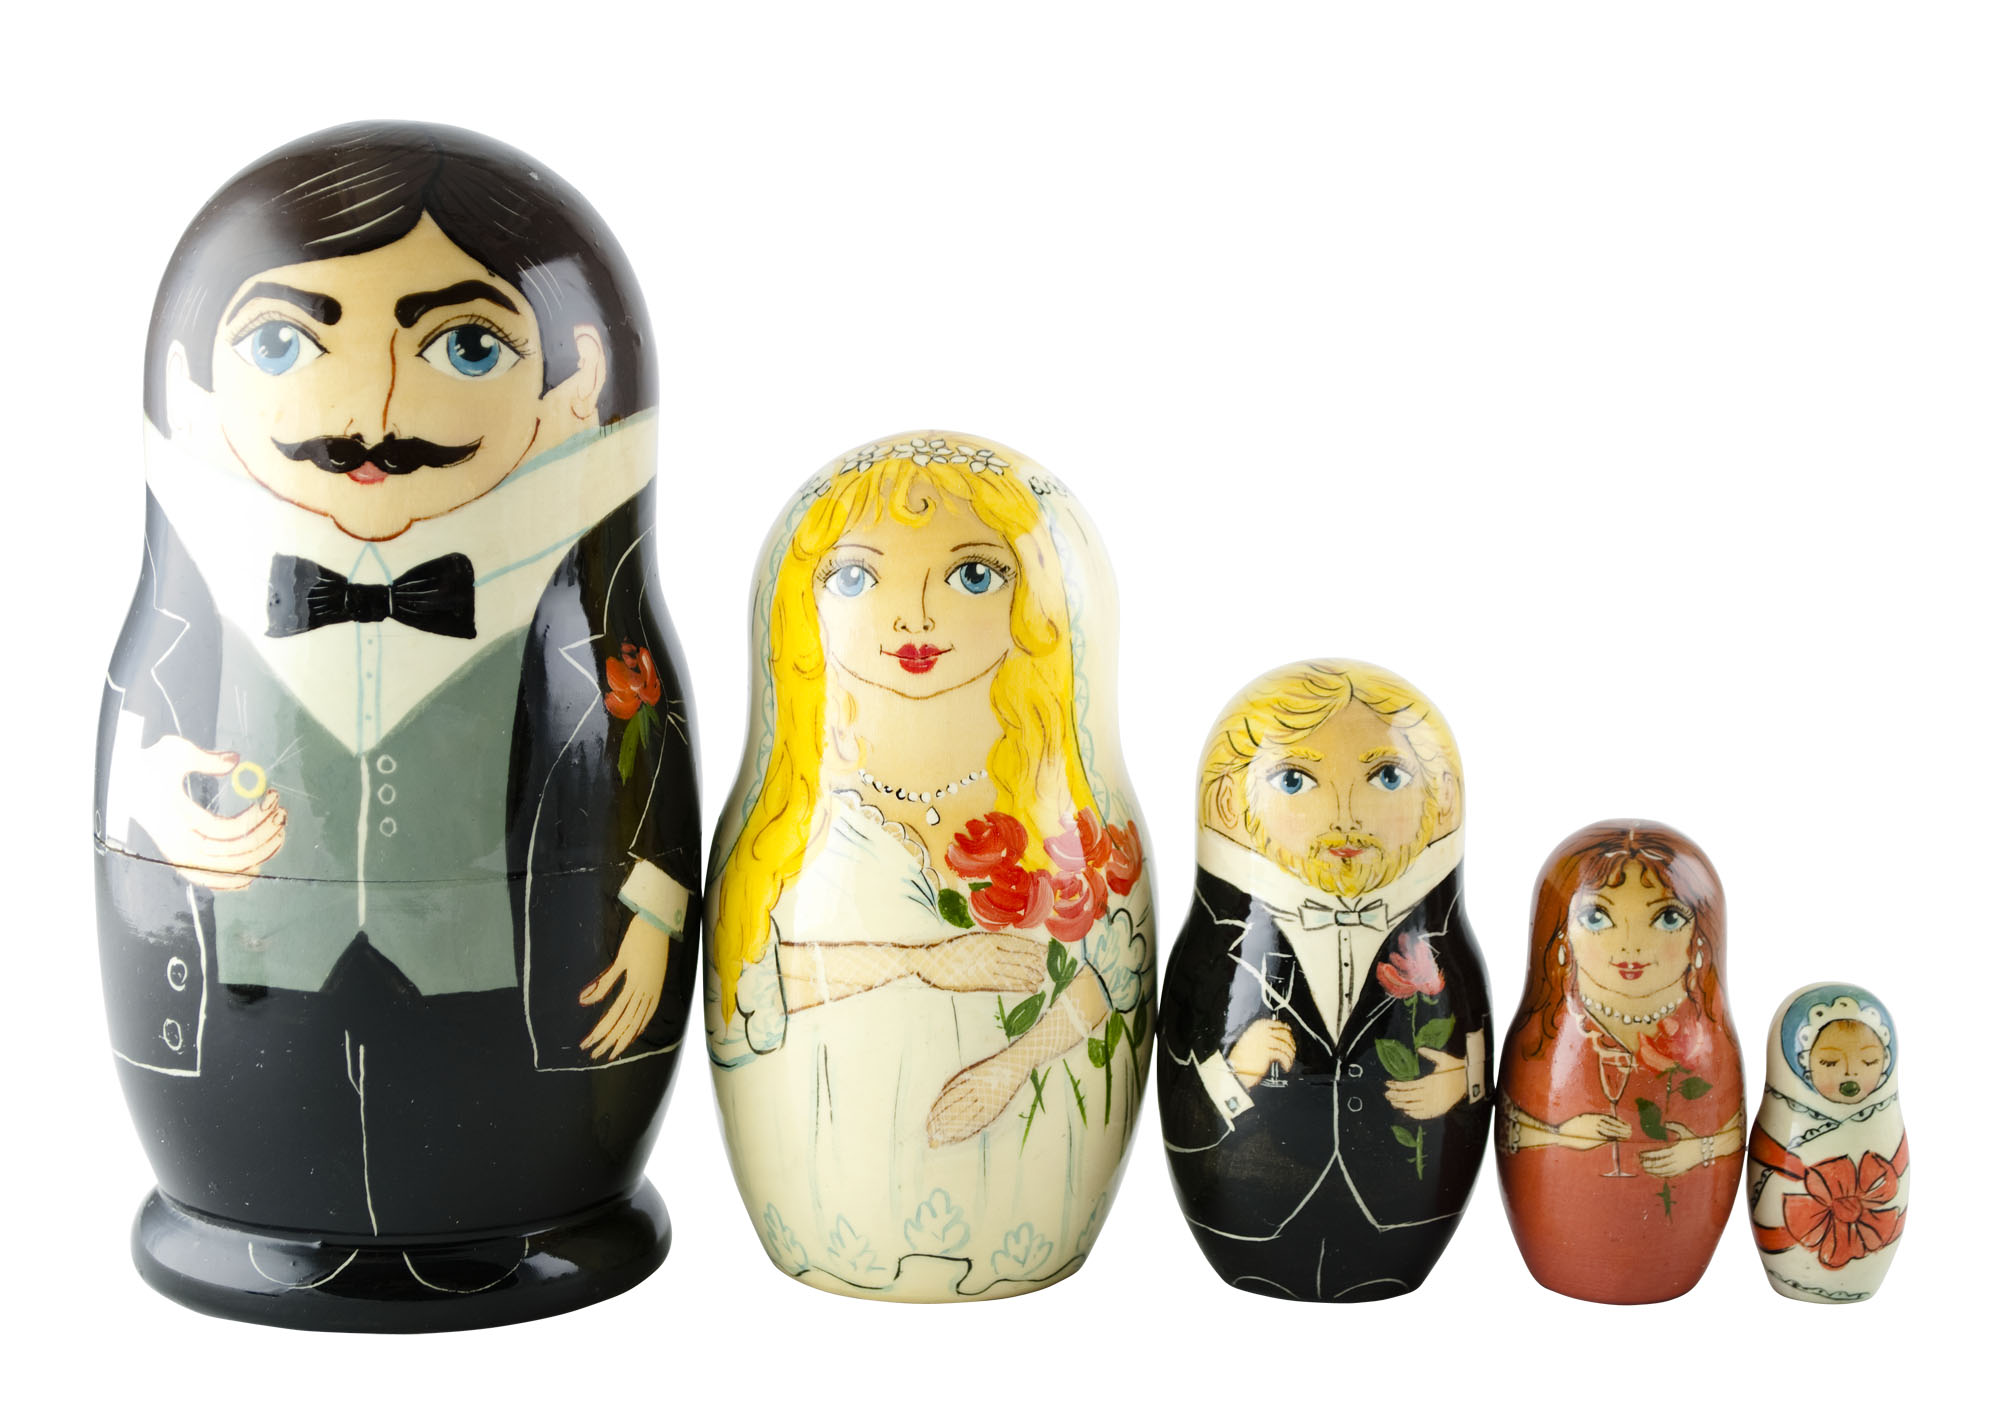 Buy Bride & Groom Wedding Doll 5pc./6" at GoldenCockerel.com